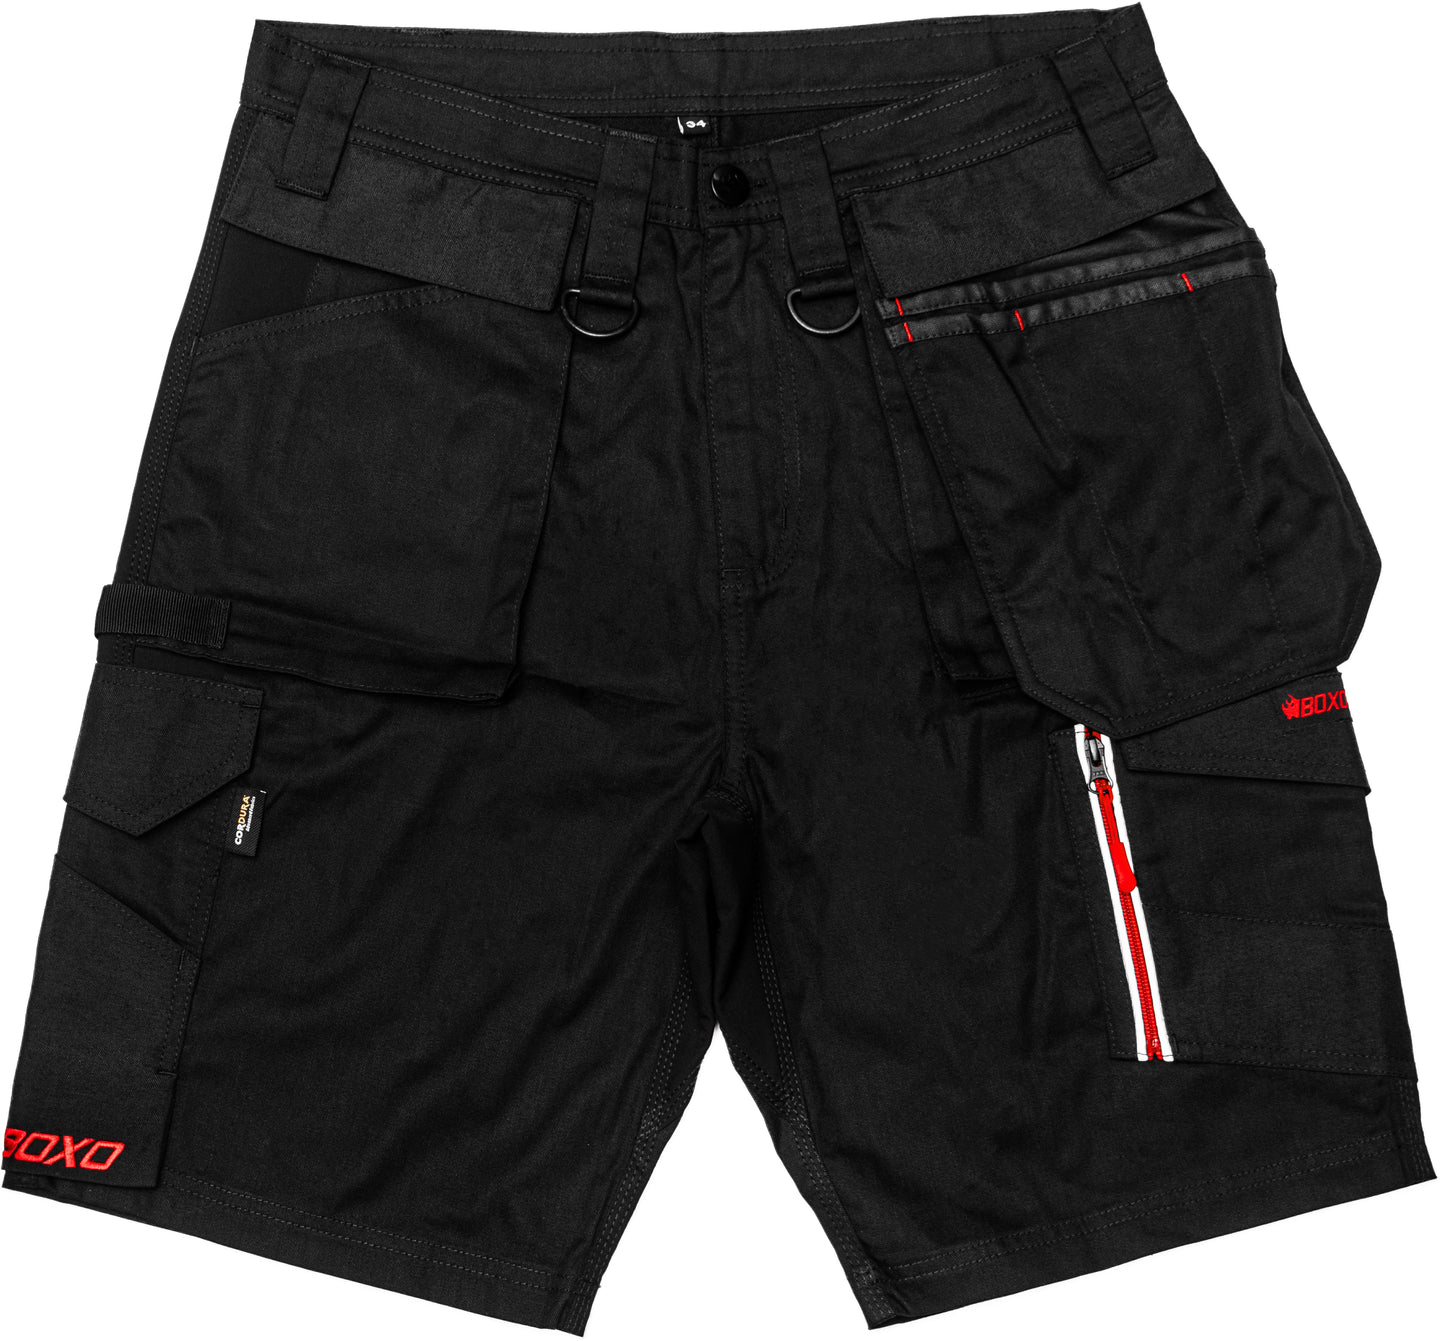 BOXO WorkWear Shorts Black - Various Sizes Available